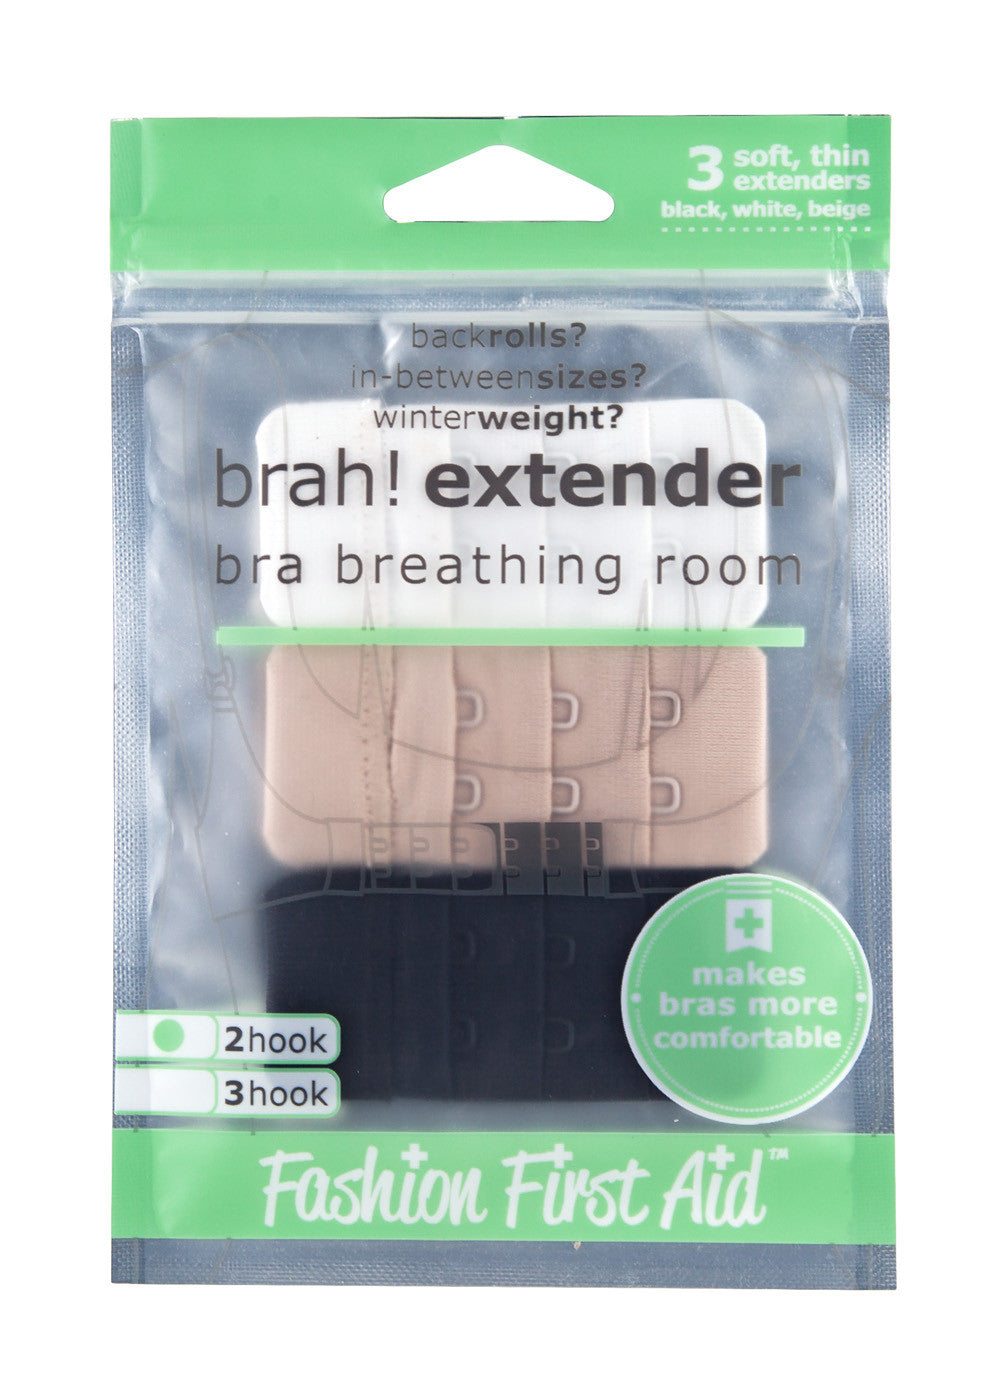 Brah Extender- Bra Extender for bra breathing room 